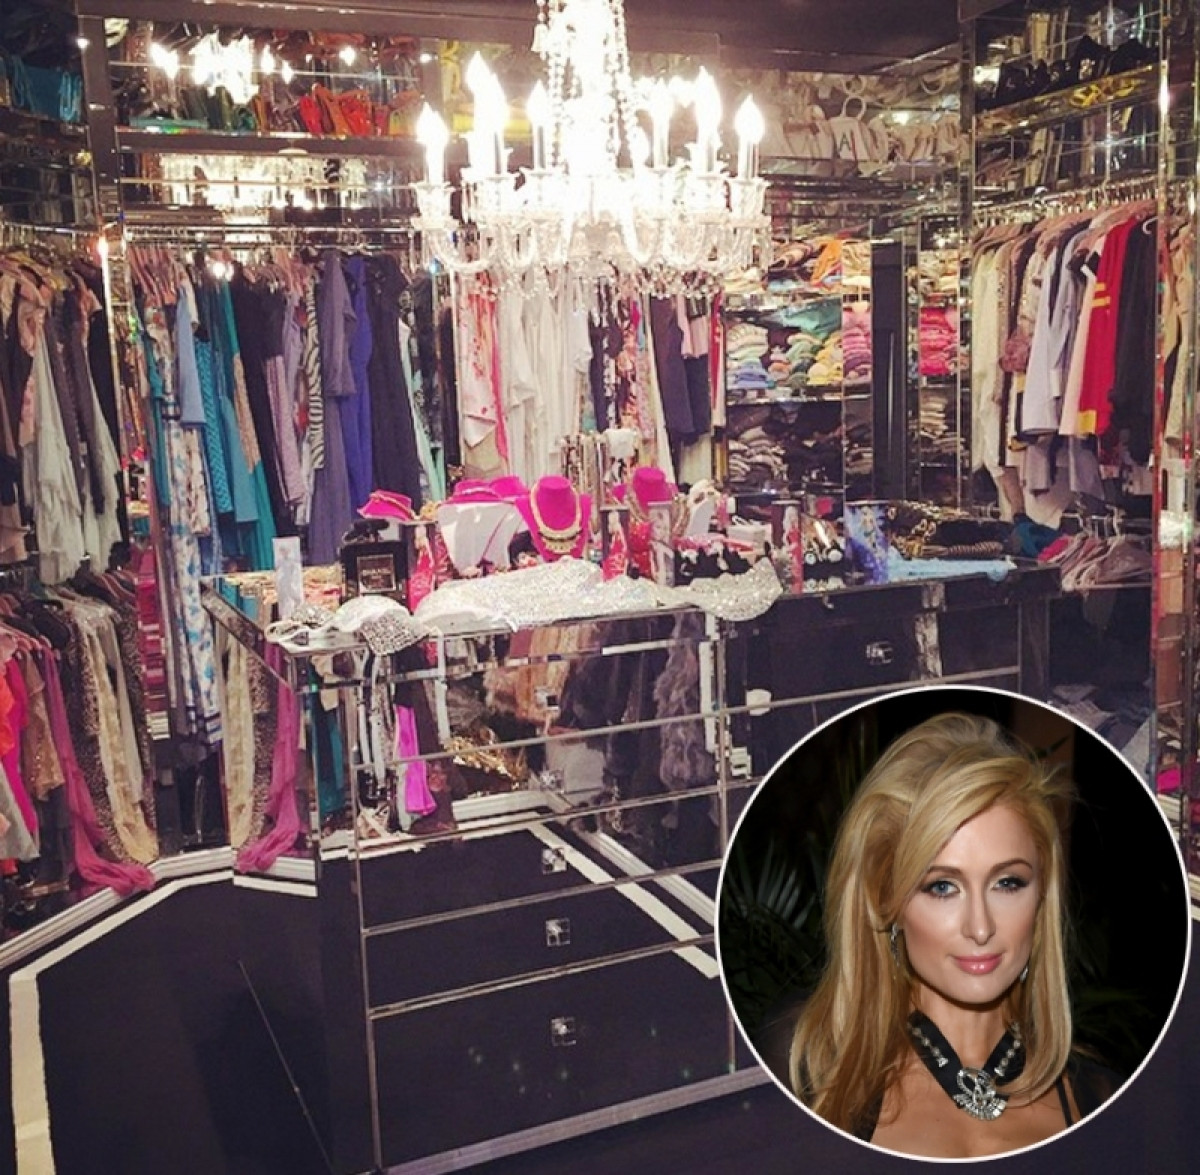 Paris Hilton phải sử dụng vài căn phòng để chứa riêng biệt khối quần áo, trang sức của cô. Một trong những căn phòng không khác gì cửa hàng thời trang.